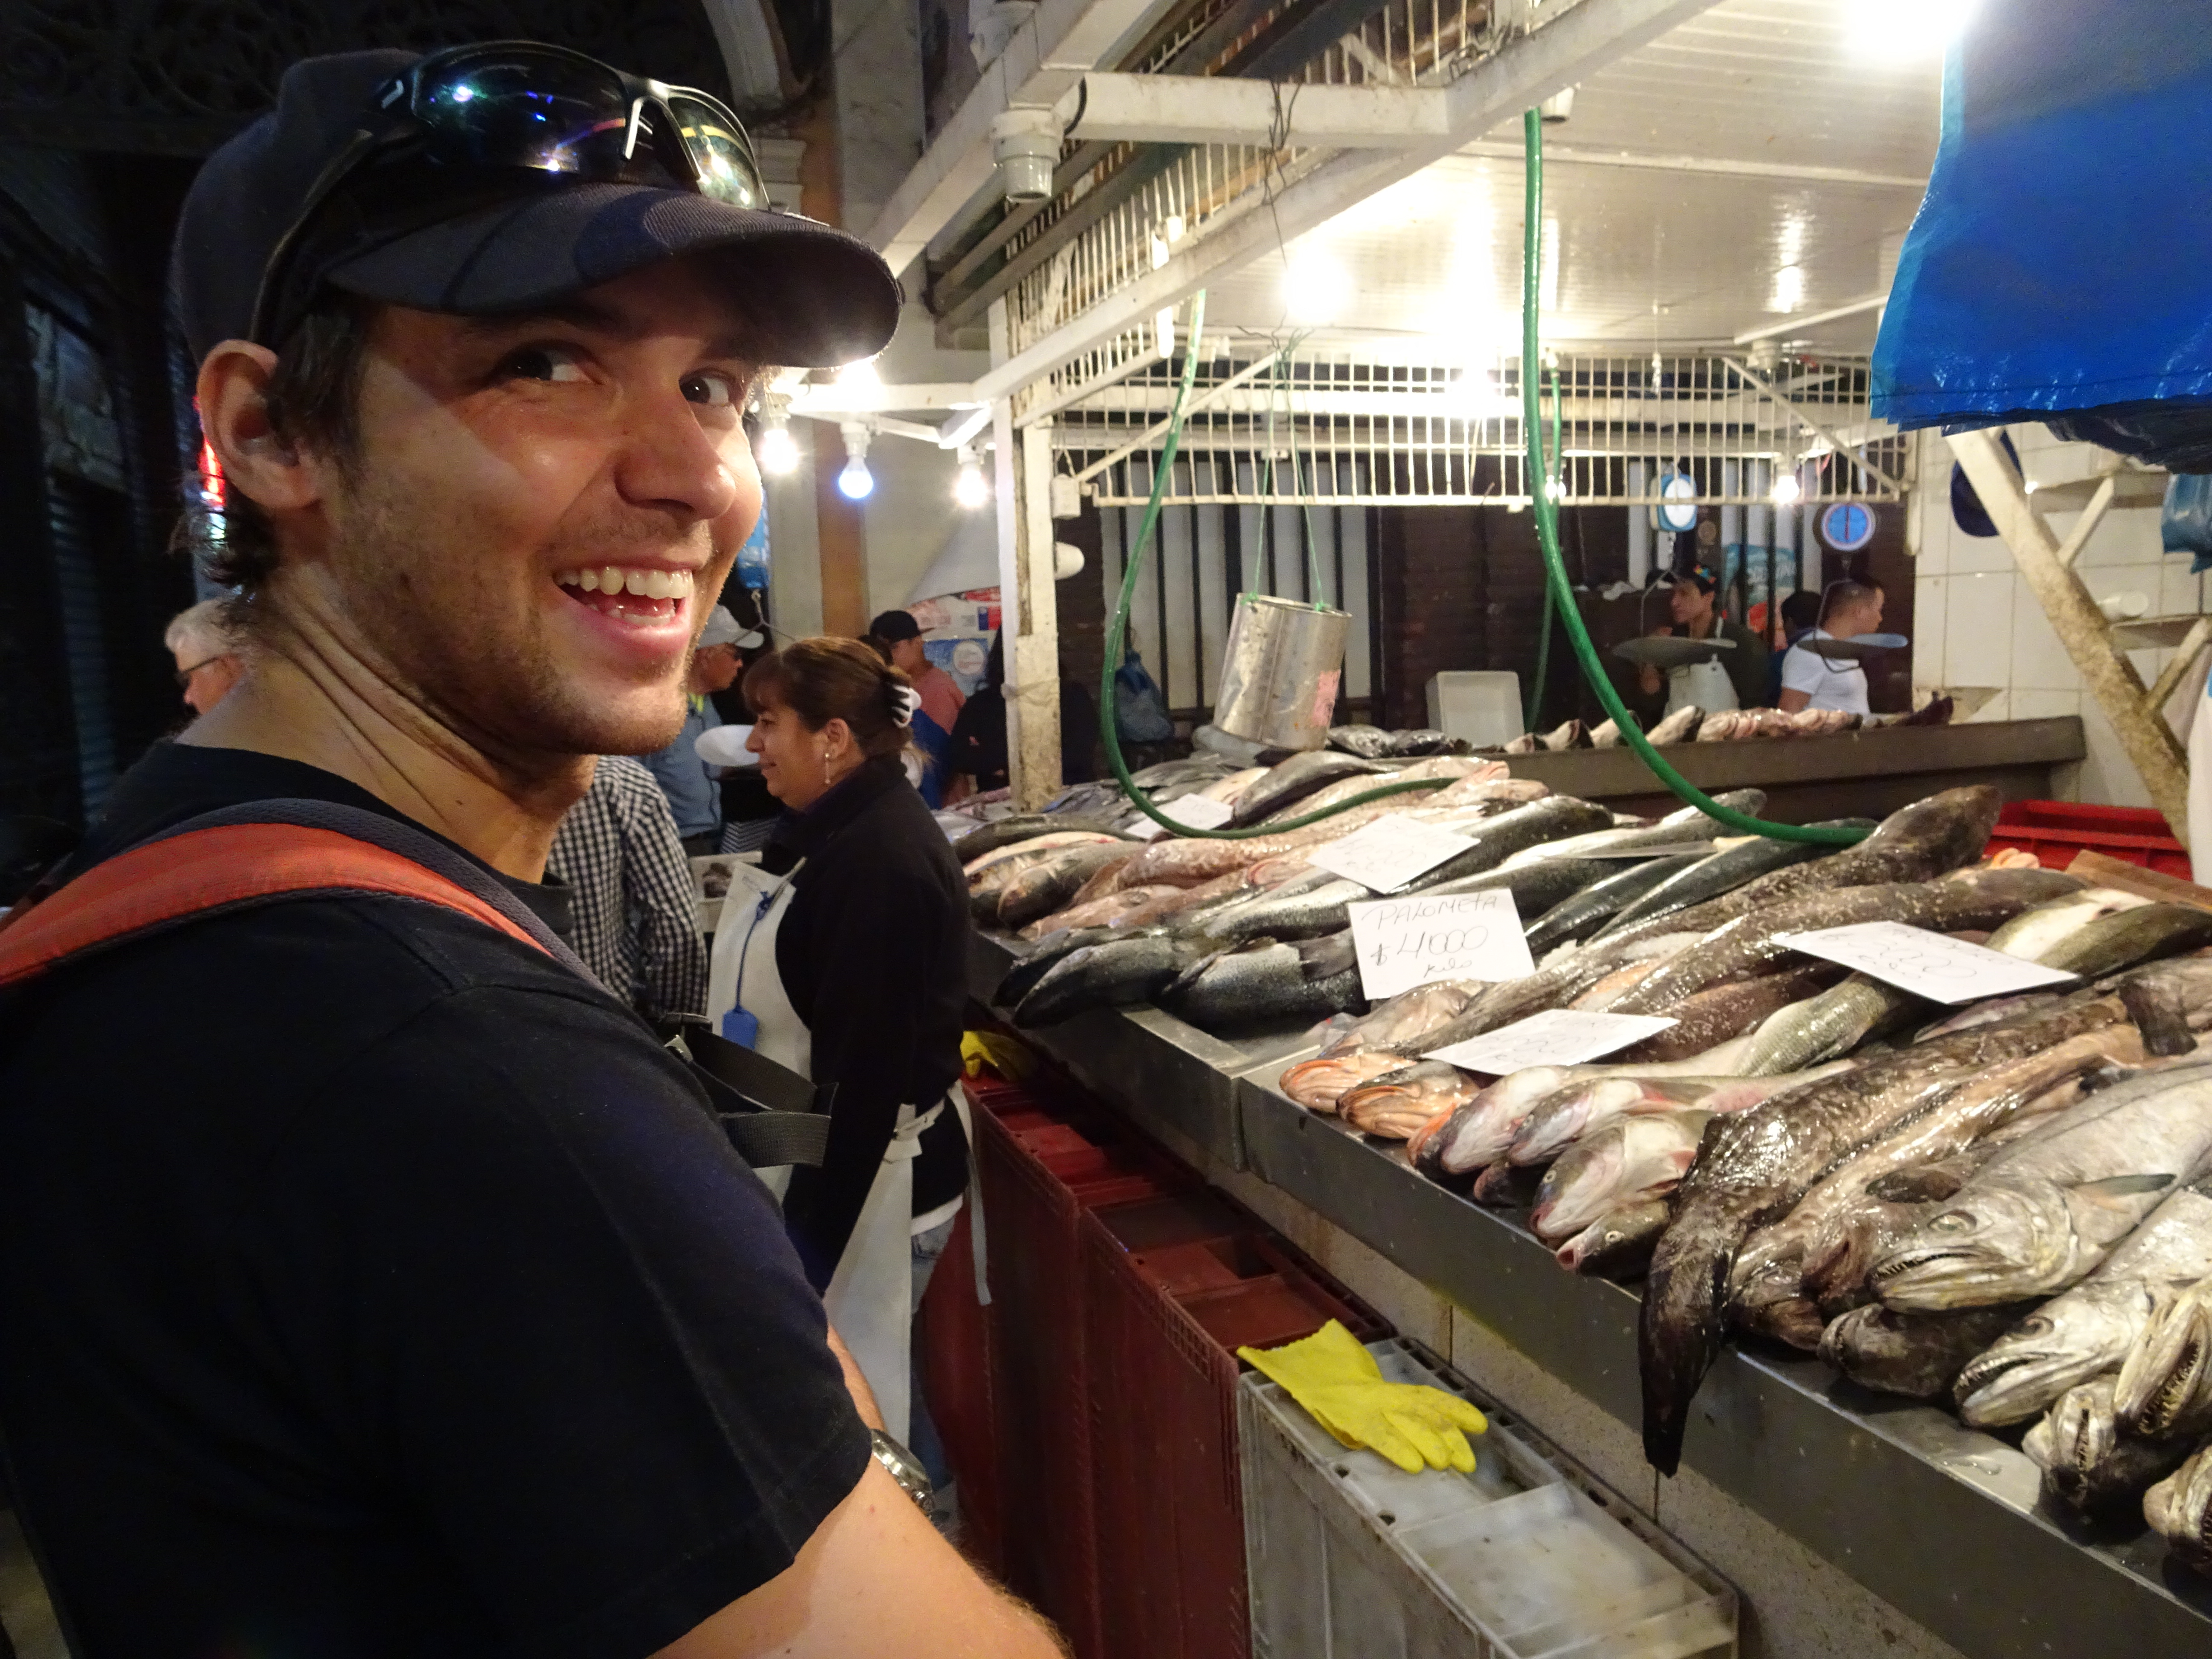 Mercado Central mit frischem Fisch